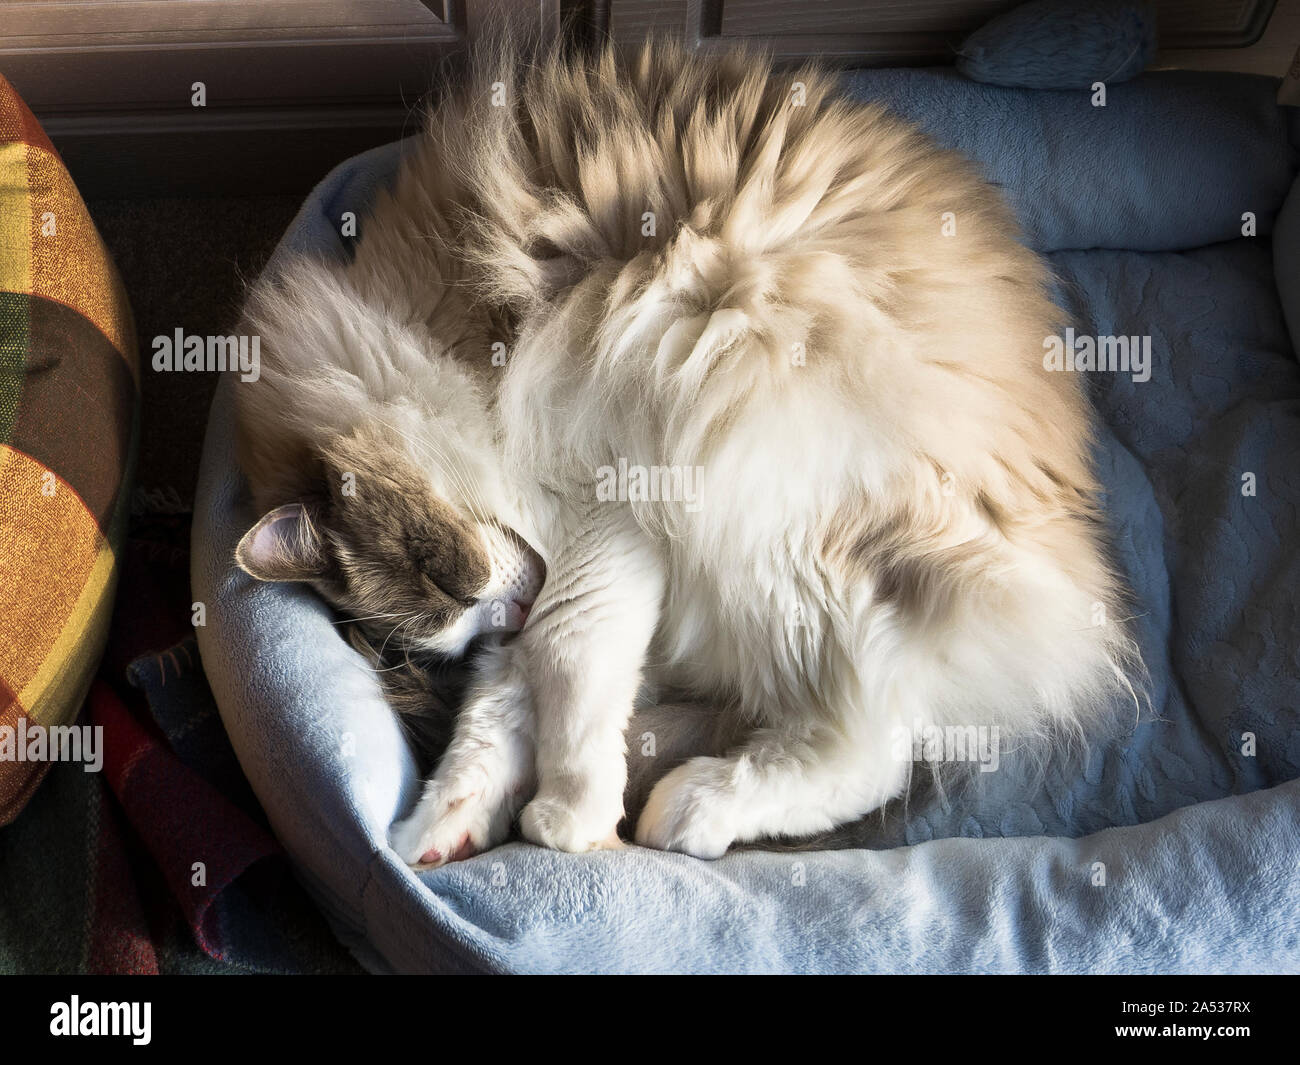 Ein erwachsenes Männchen Ragdoll Katze, die für Ihre Behaglichkeit und Zuneigung renommierte, eingerollt in einem blauen gerade ein wenig auf der kleinen Seite. Stockfoto